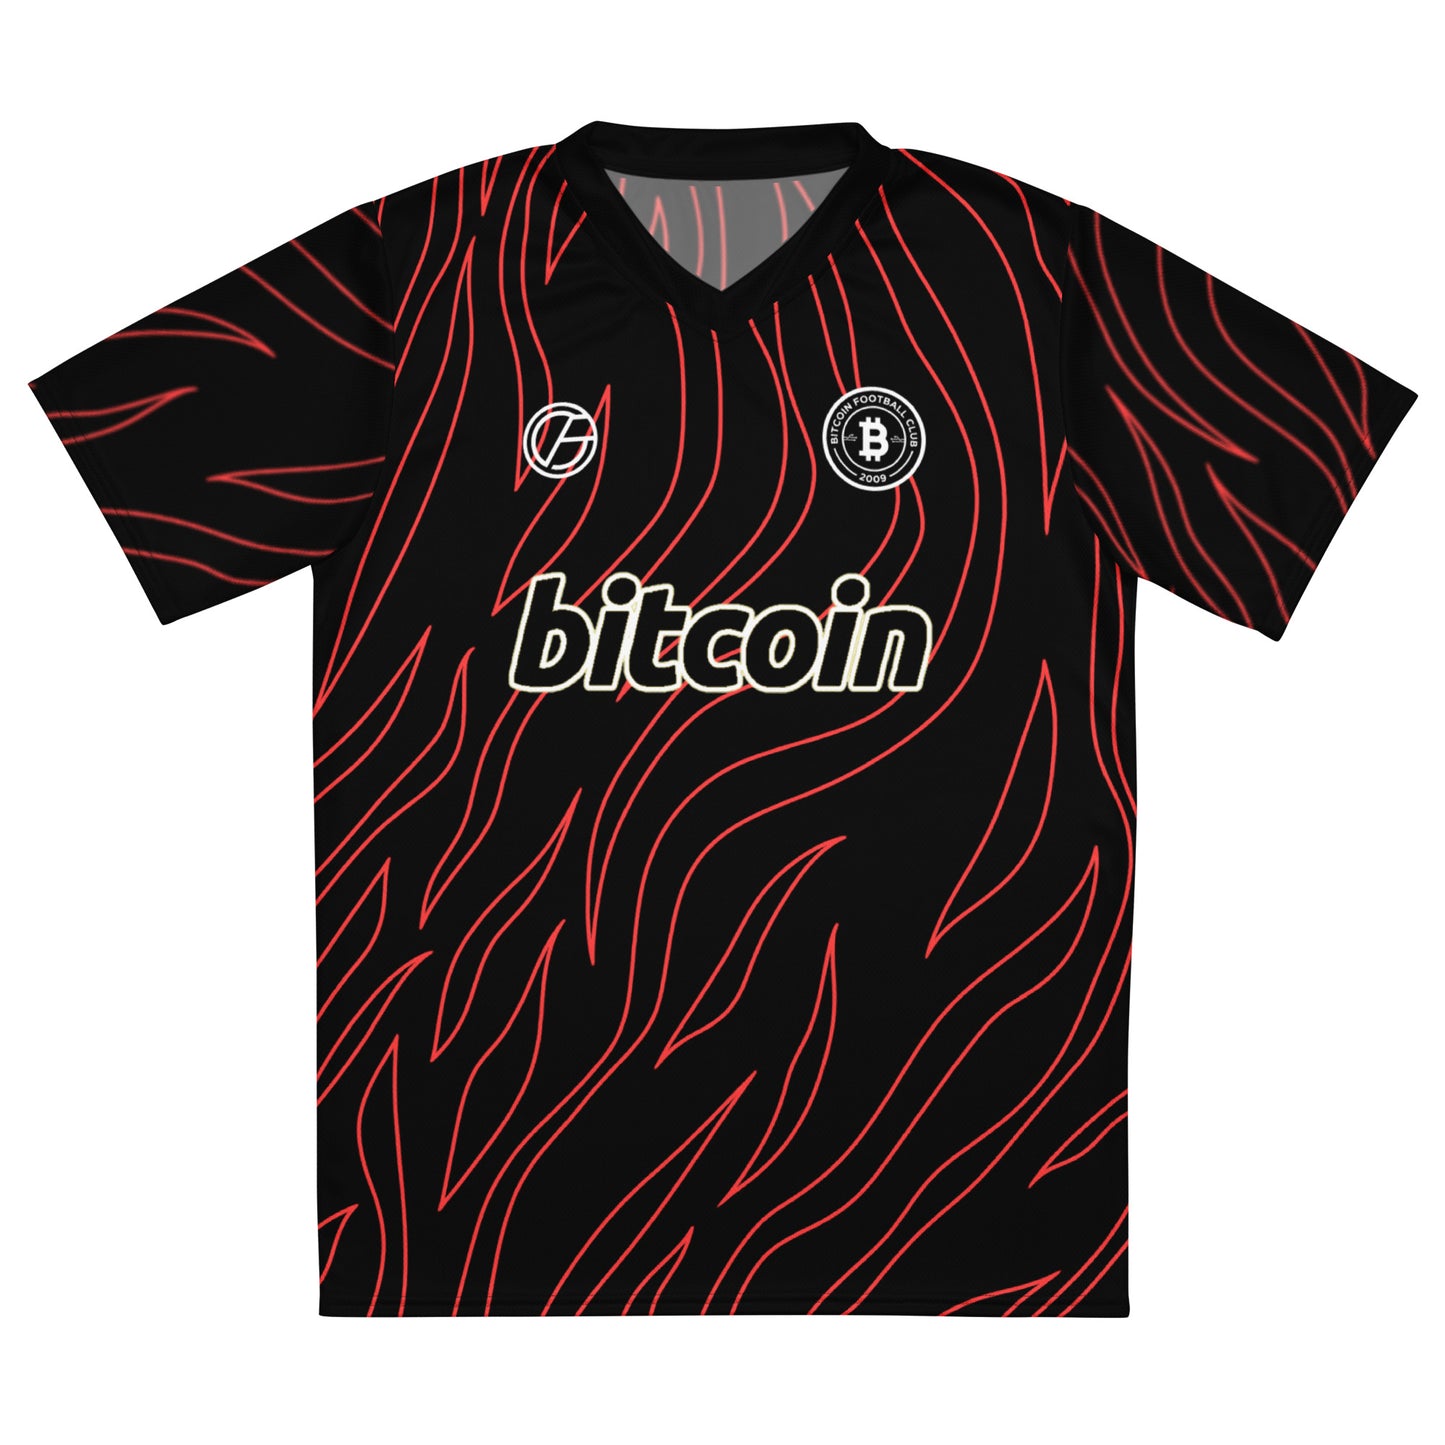 Bitcoin 23/24 jersey